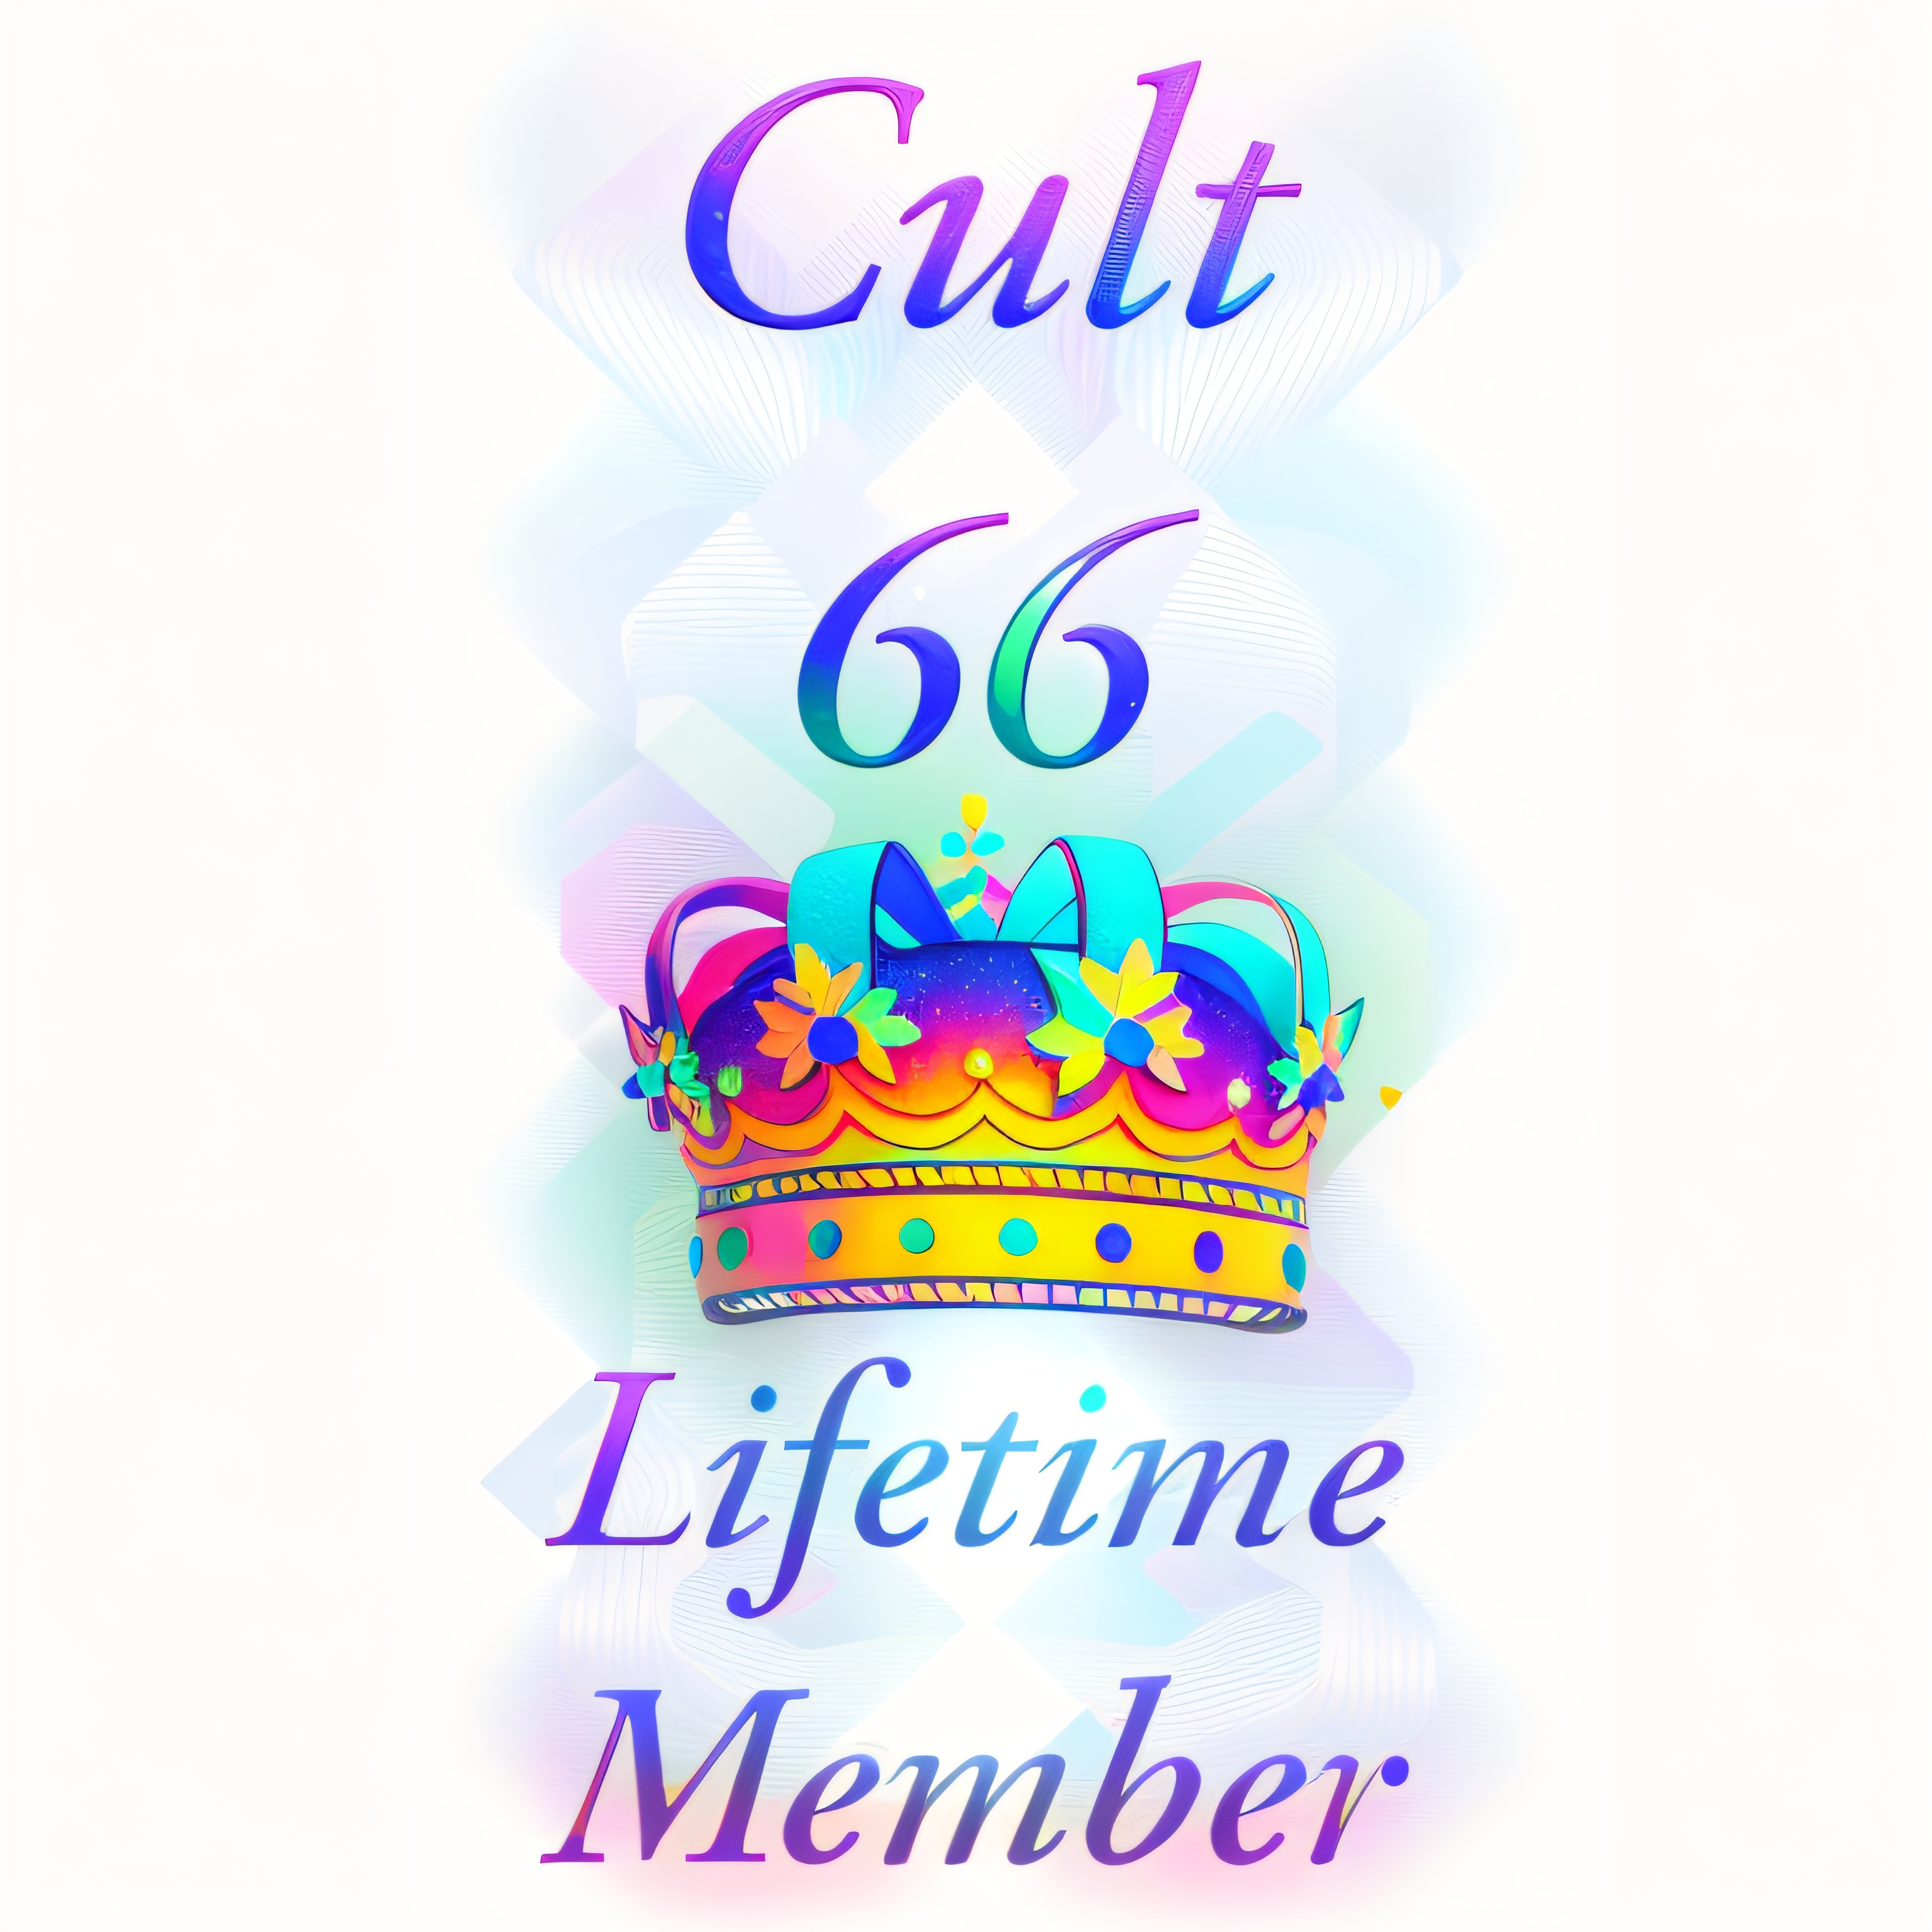 Cult 66 Membership Token